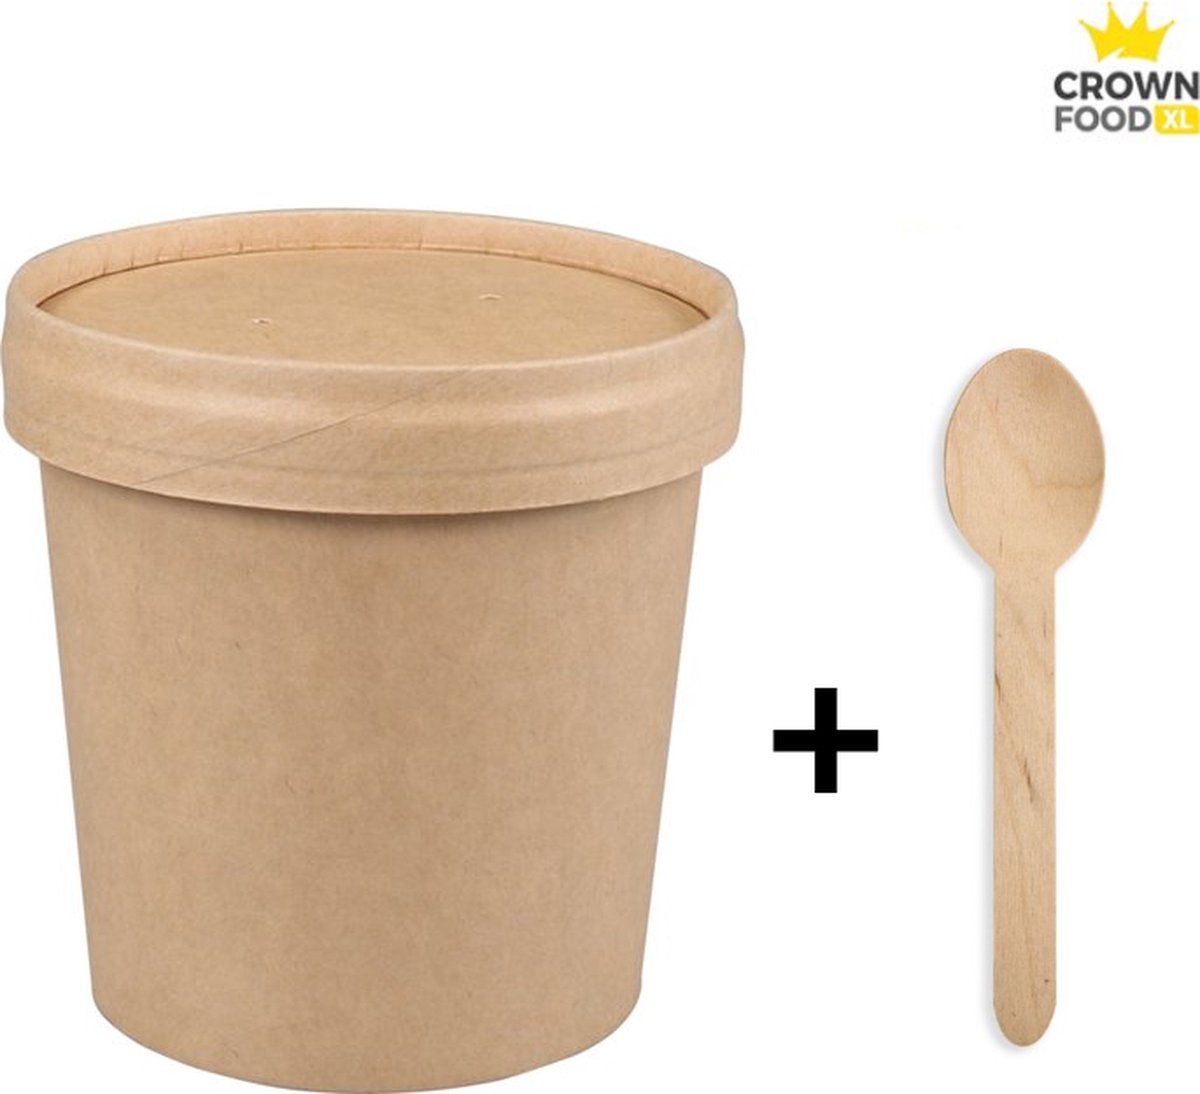 100st Soup Cup Soep Beker karton 500ml incl deksels + 100 lepels hout - Crown Food XL